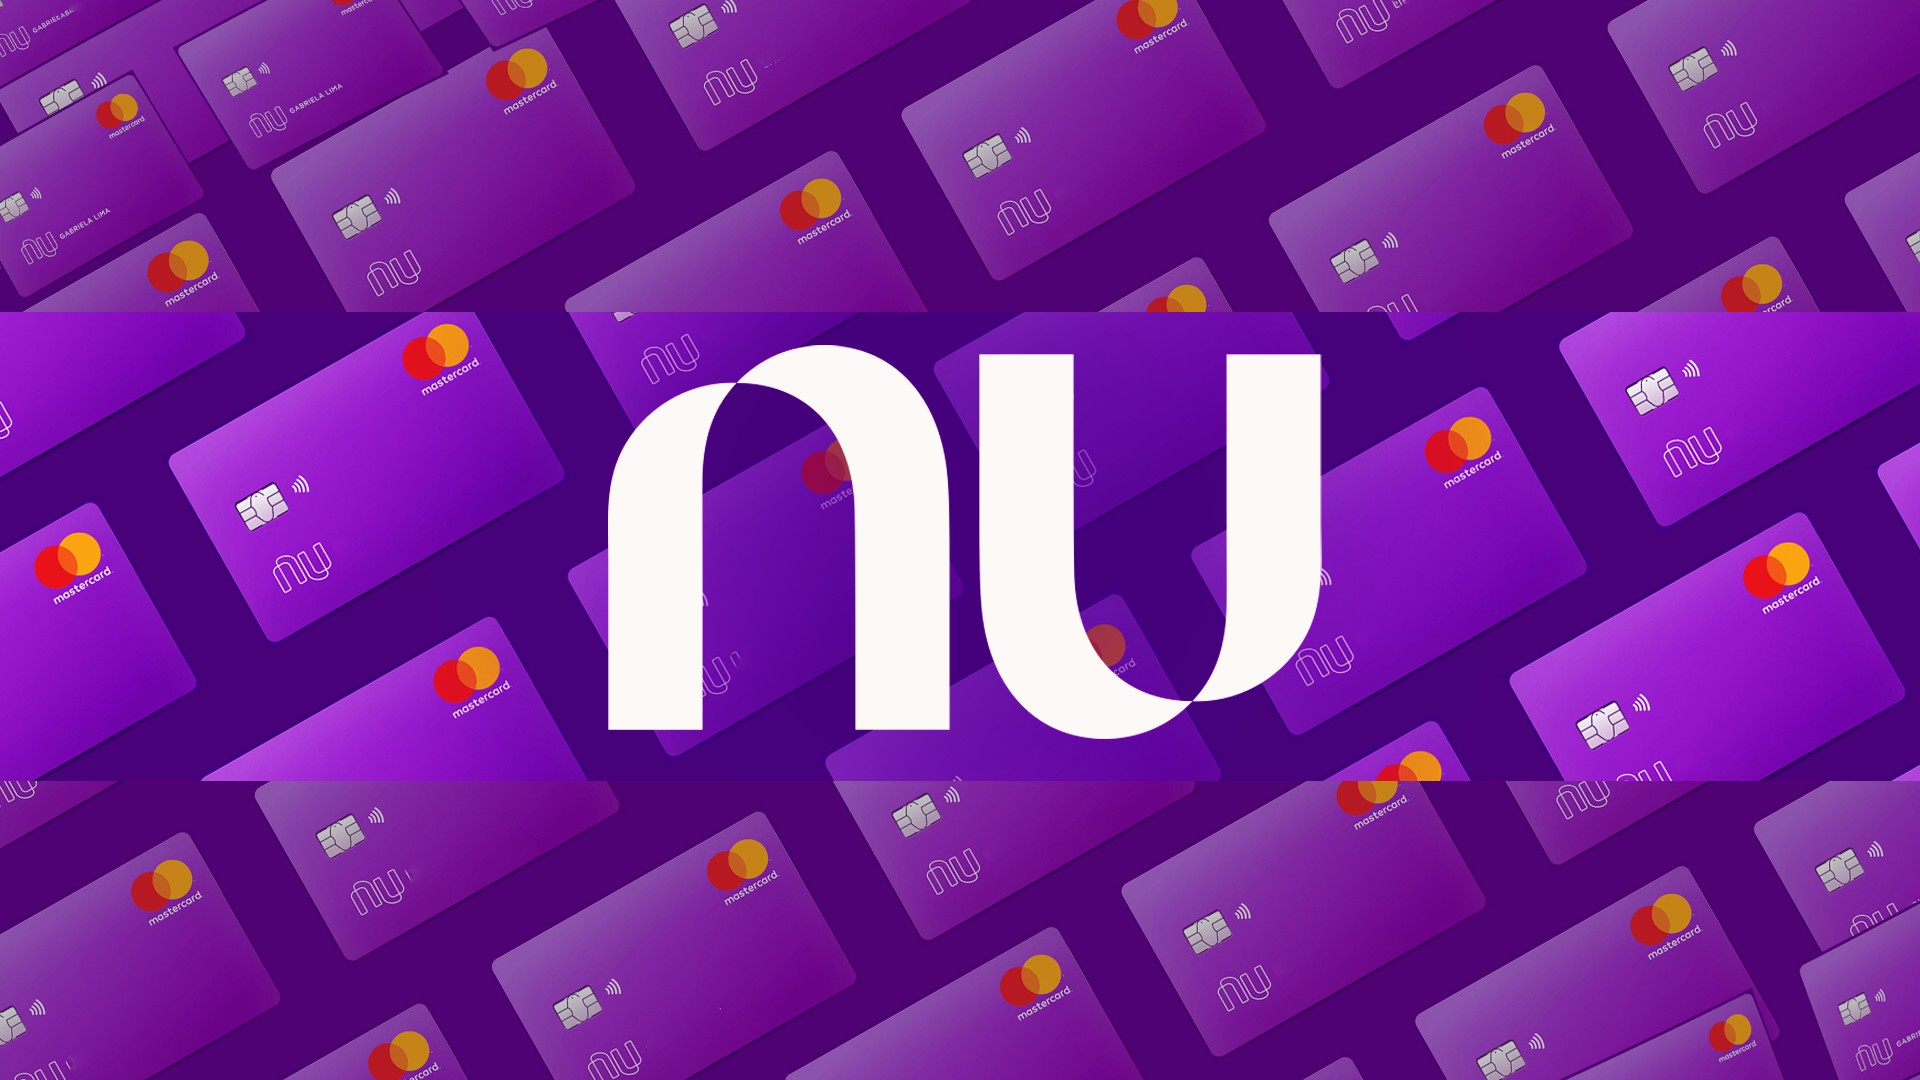 Nubank lança novo cartão virtual que se apaga depois de 24 horas